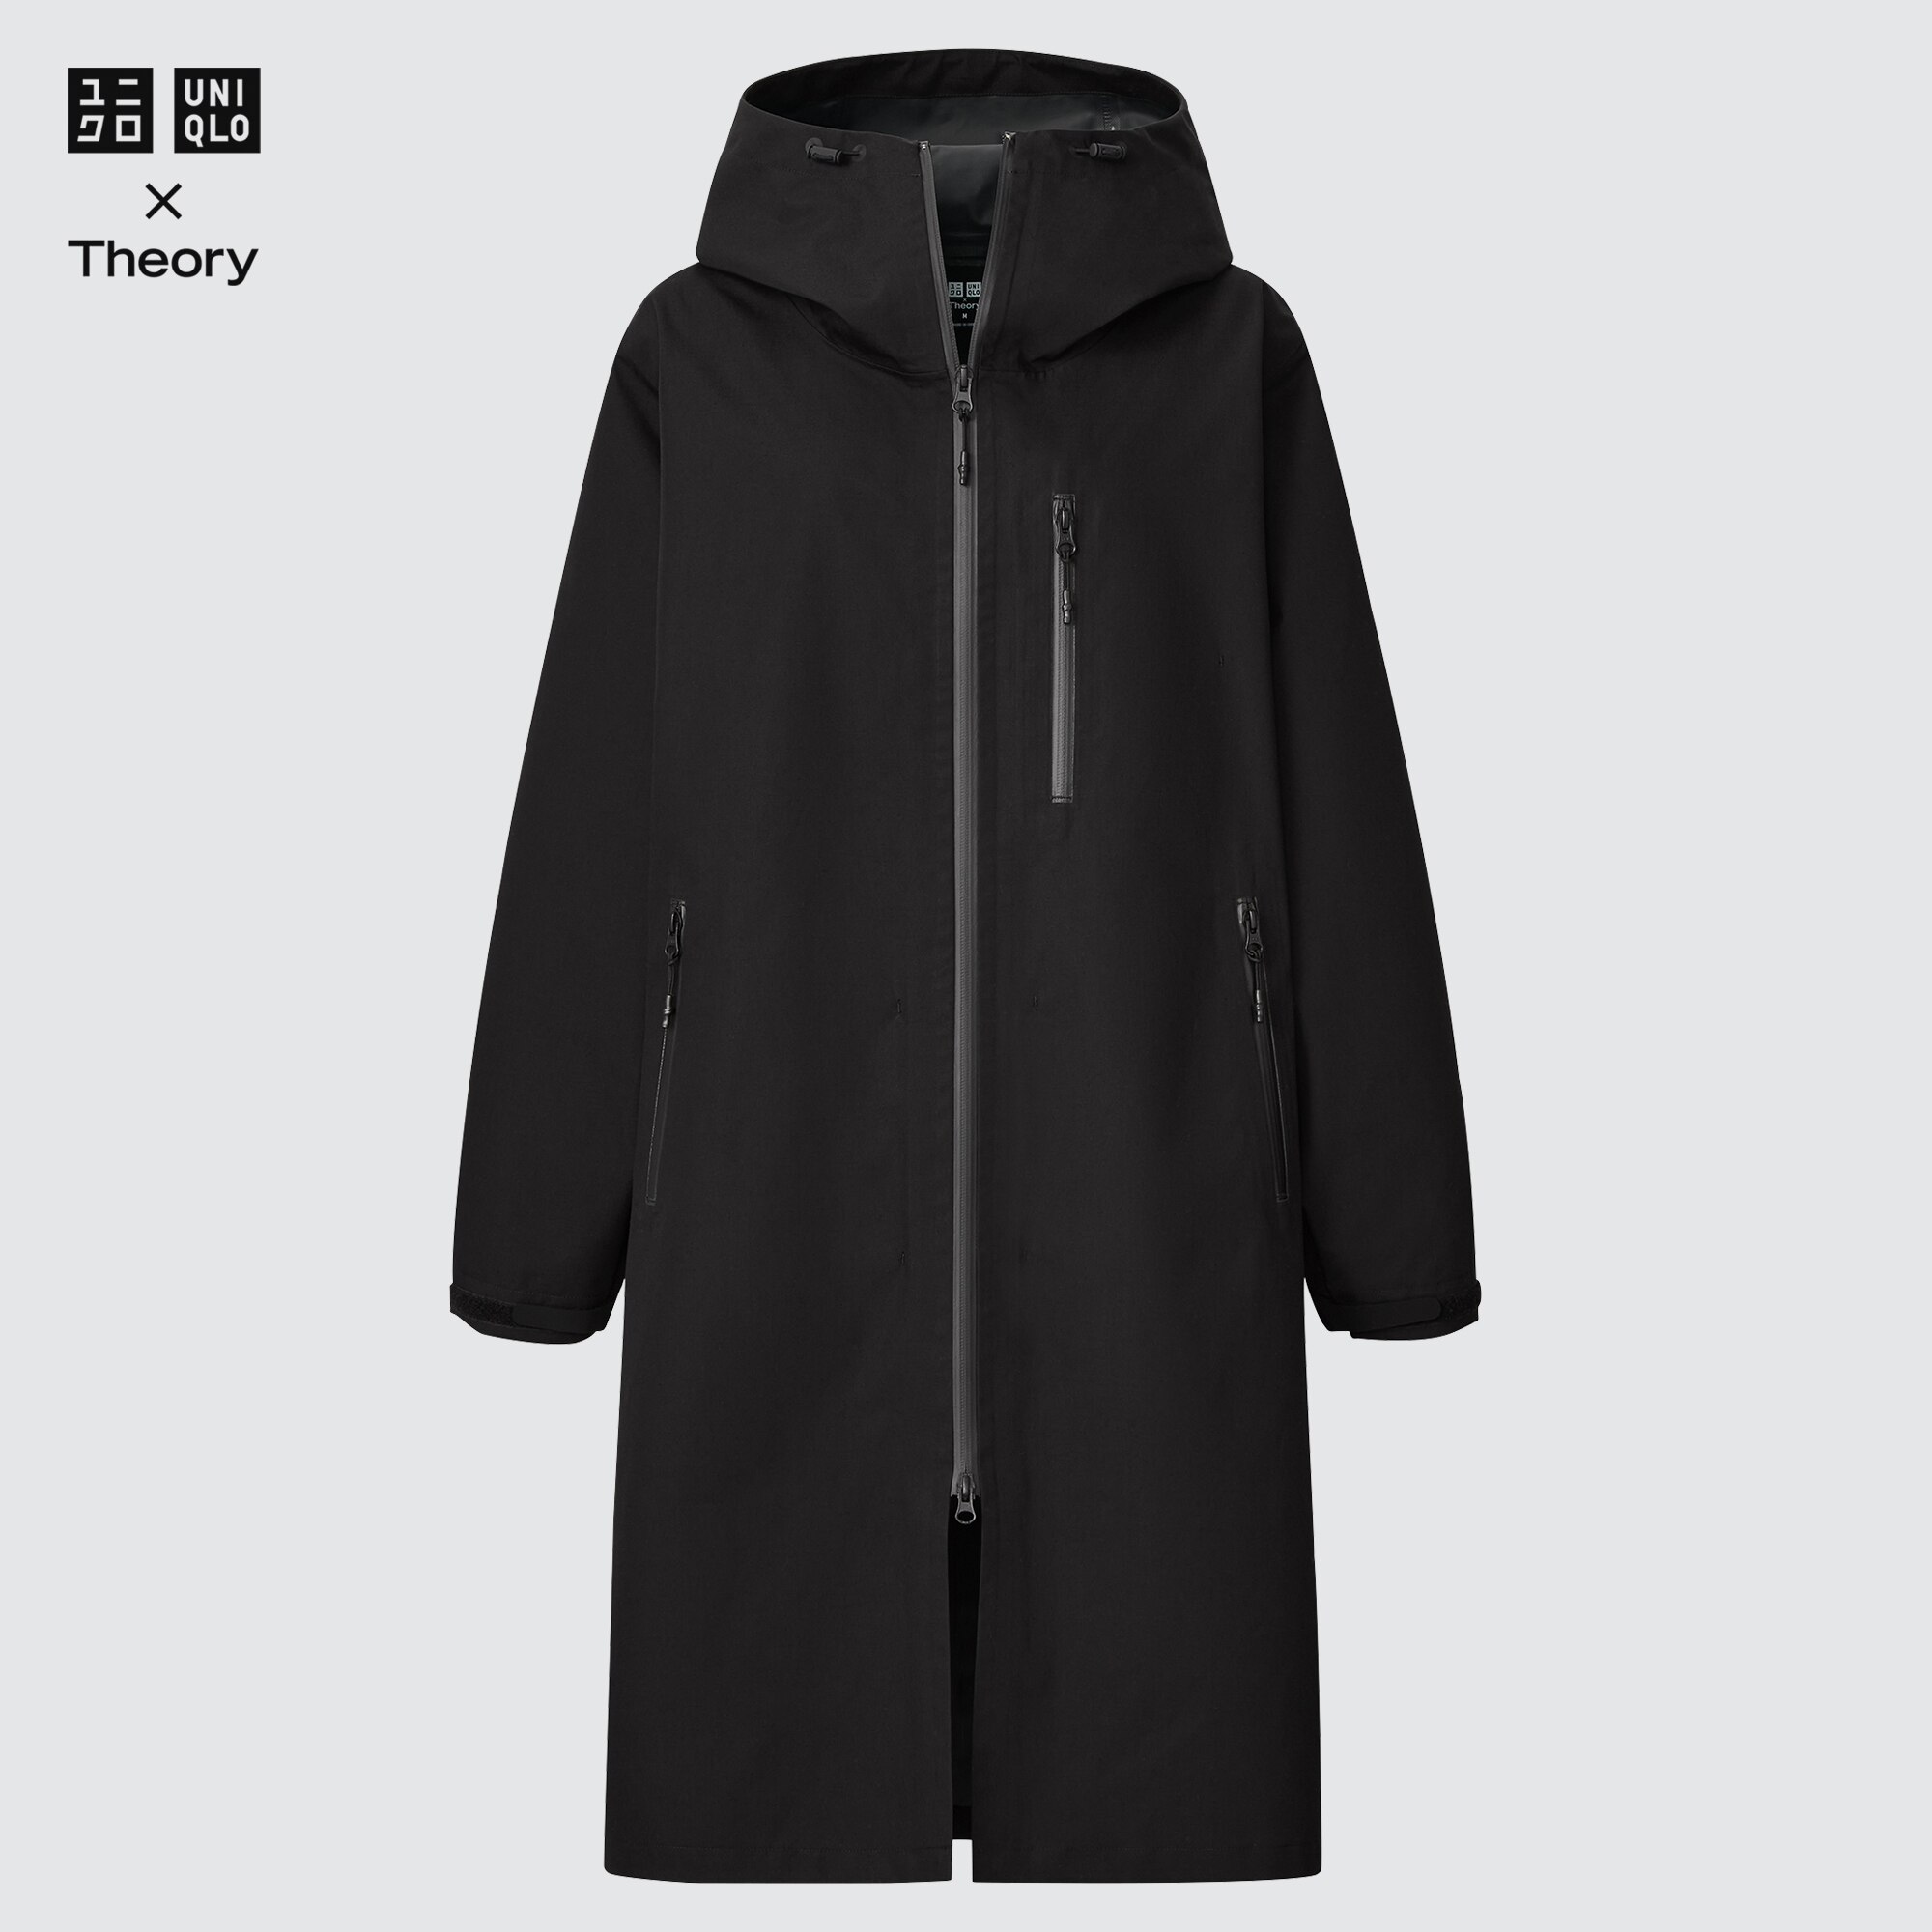 black uniqlo jacket  Shopee Philippines